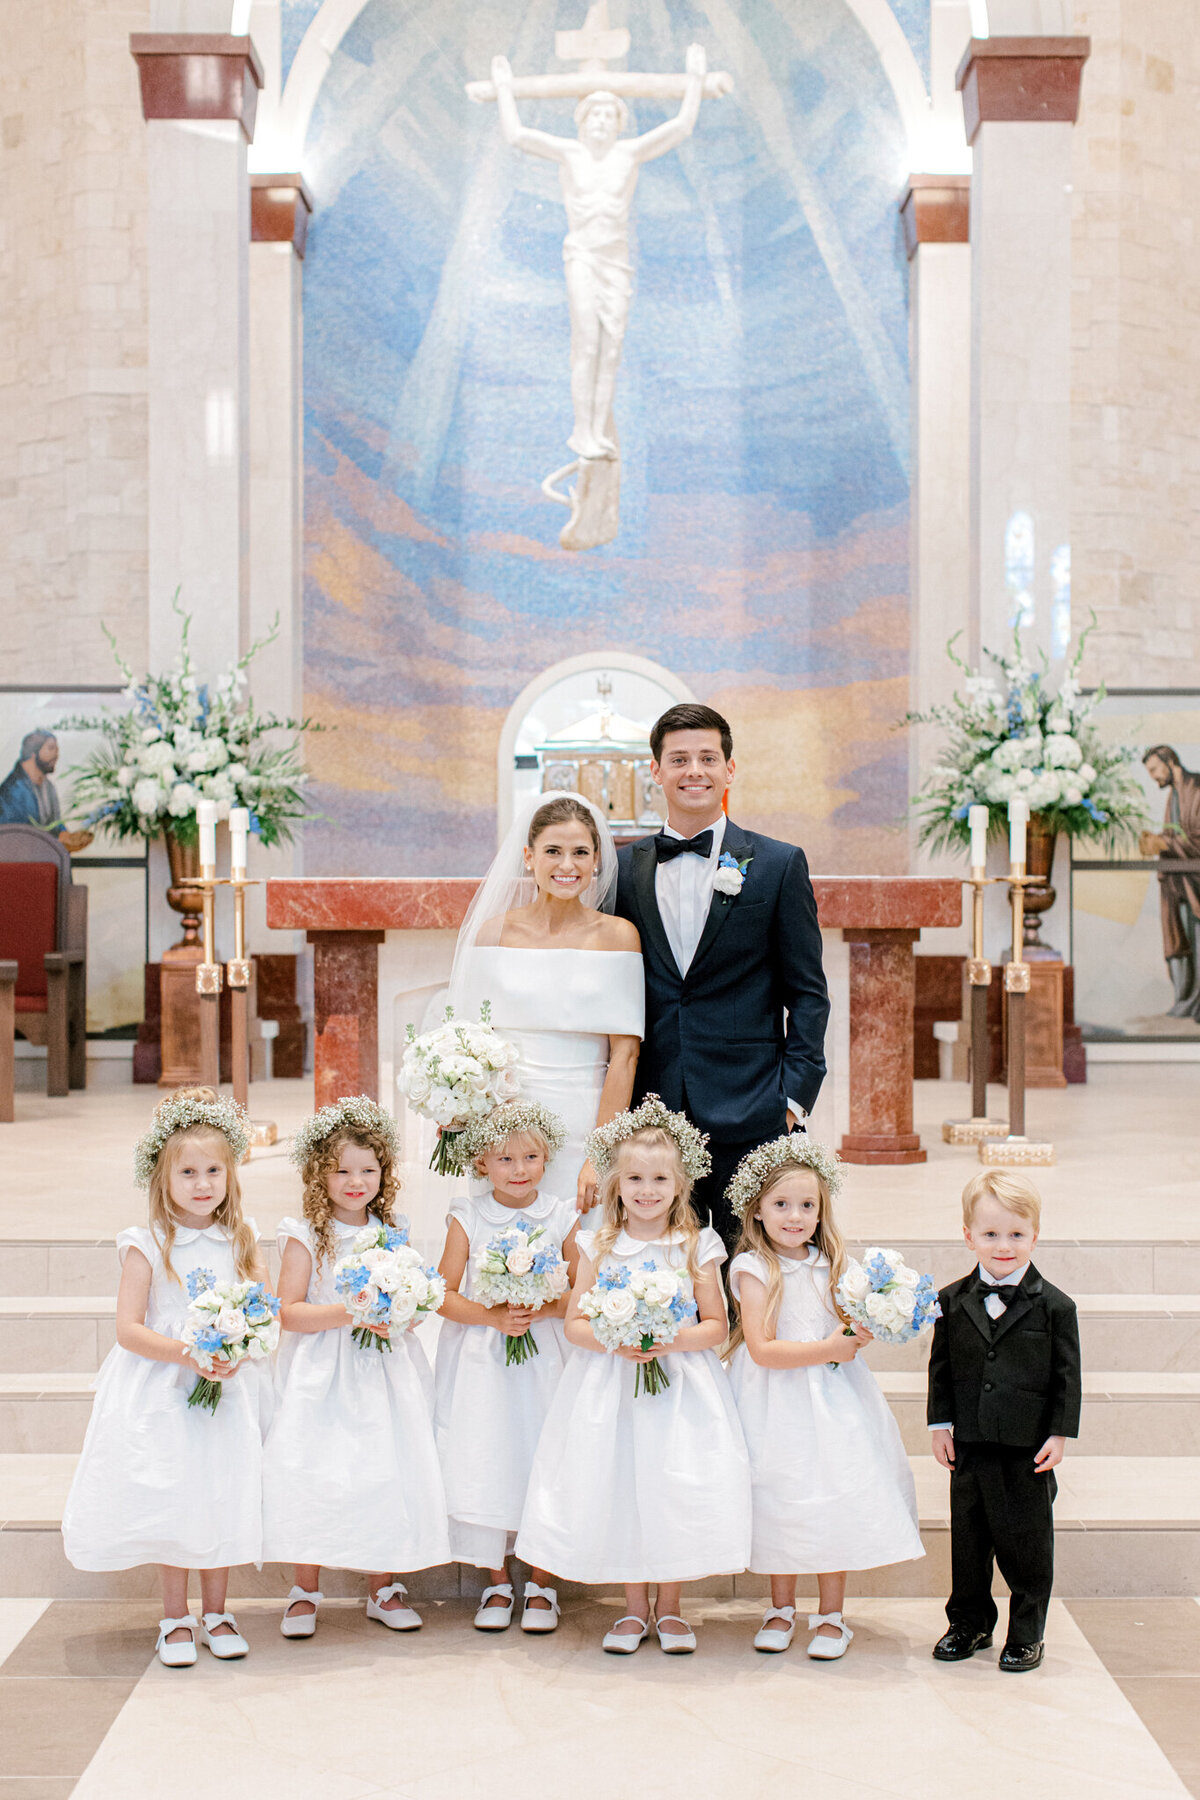 Annie & Logan's Wedding | Dallas Wedding Photographer | Sami Kathryn Photography-111